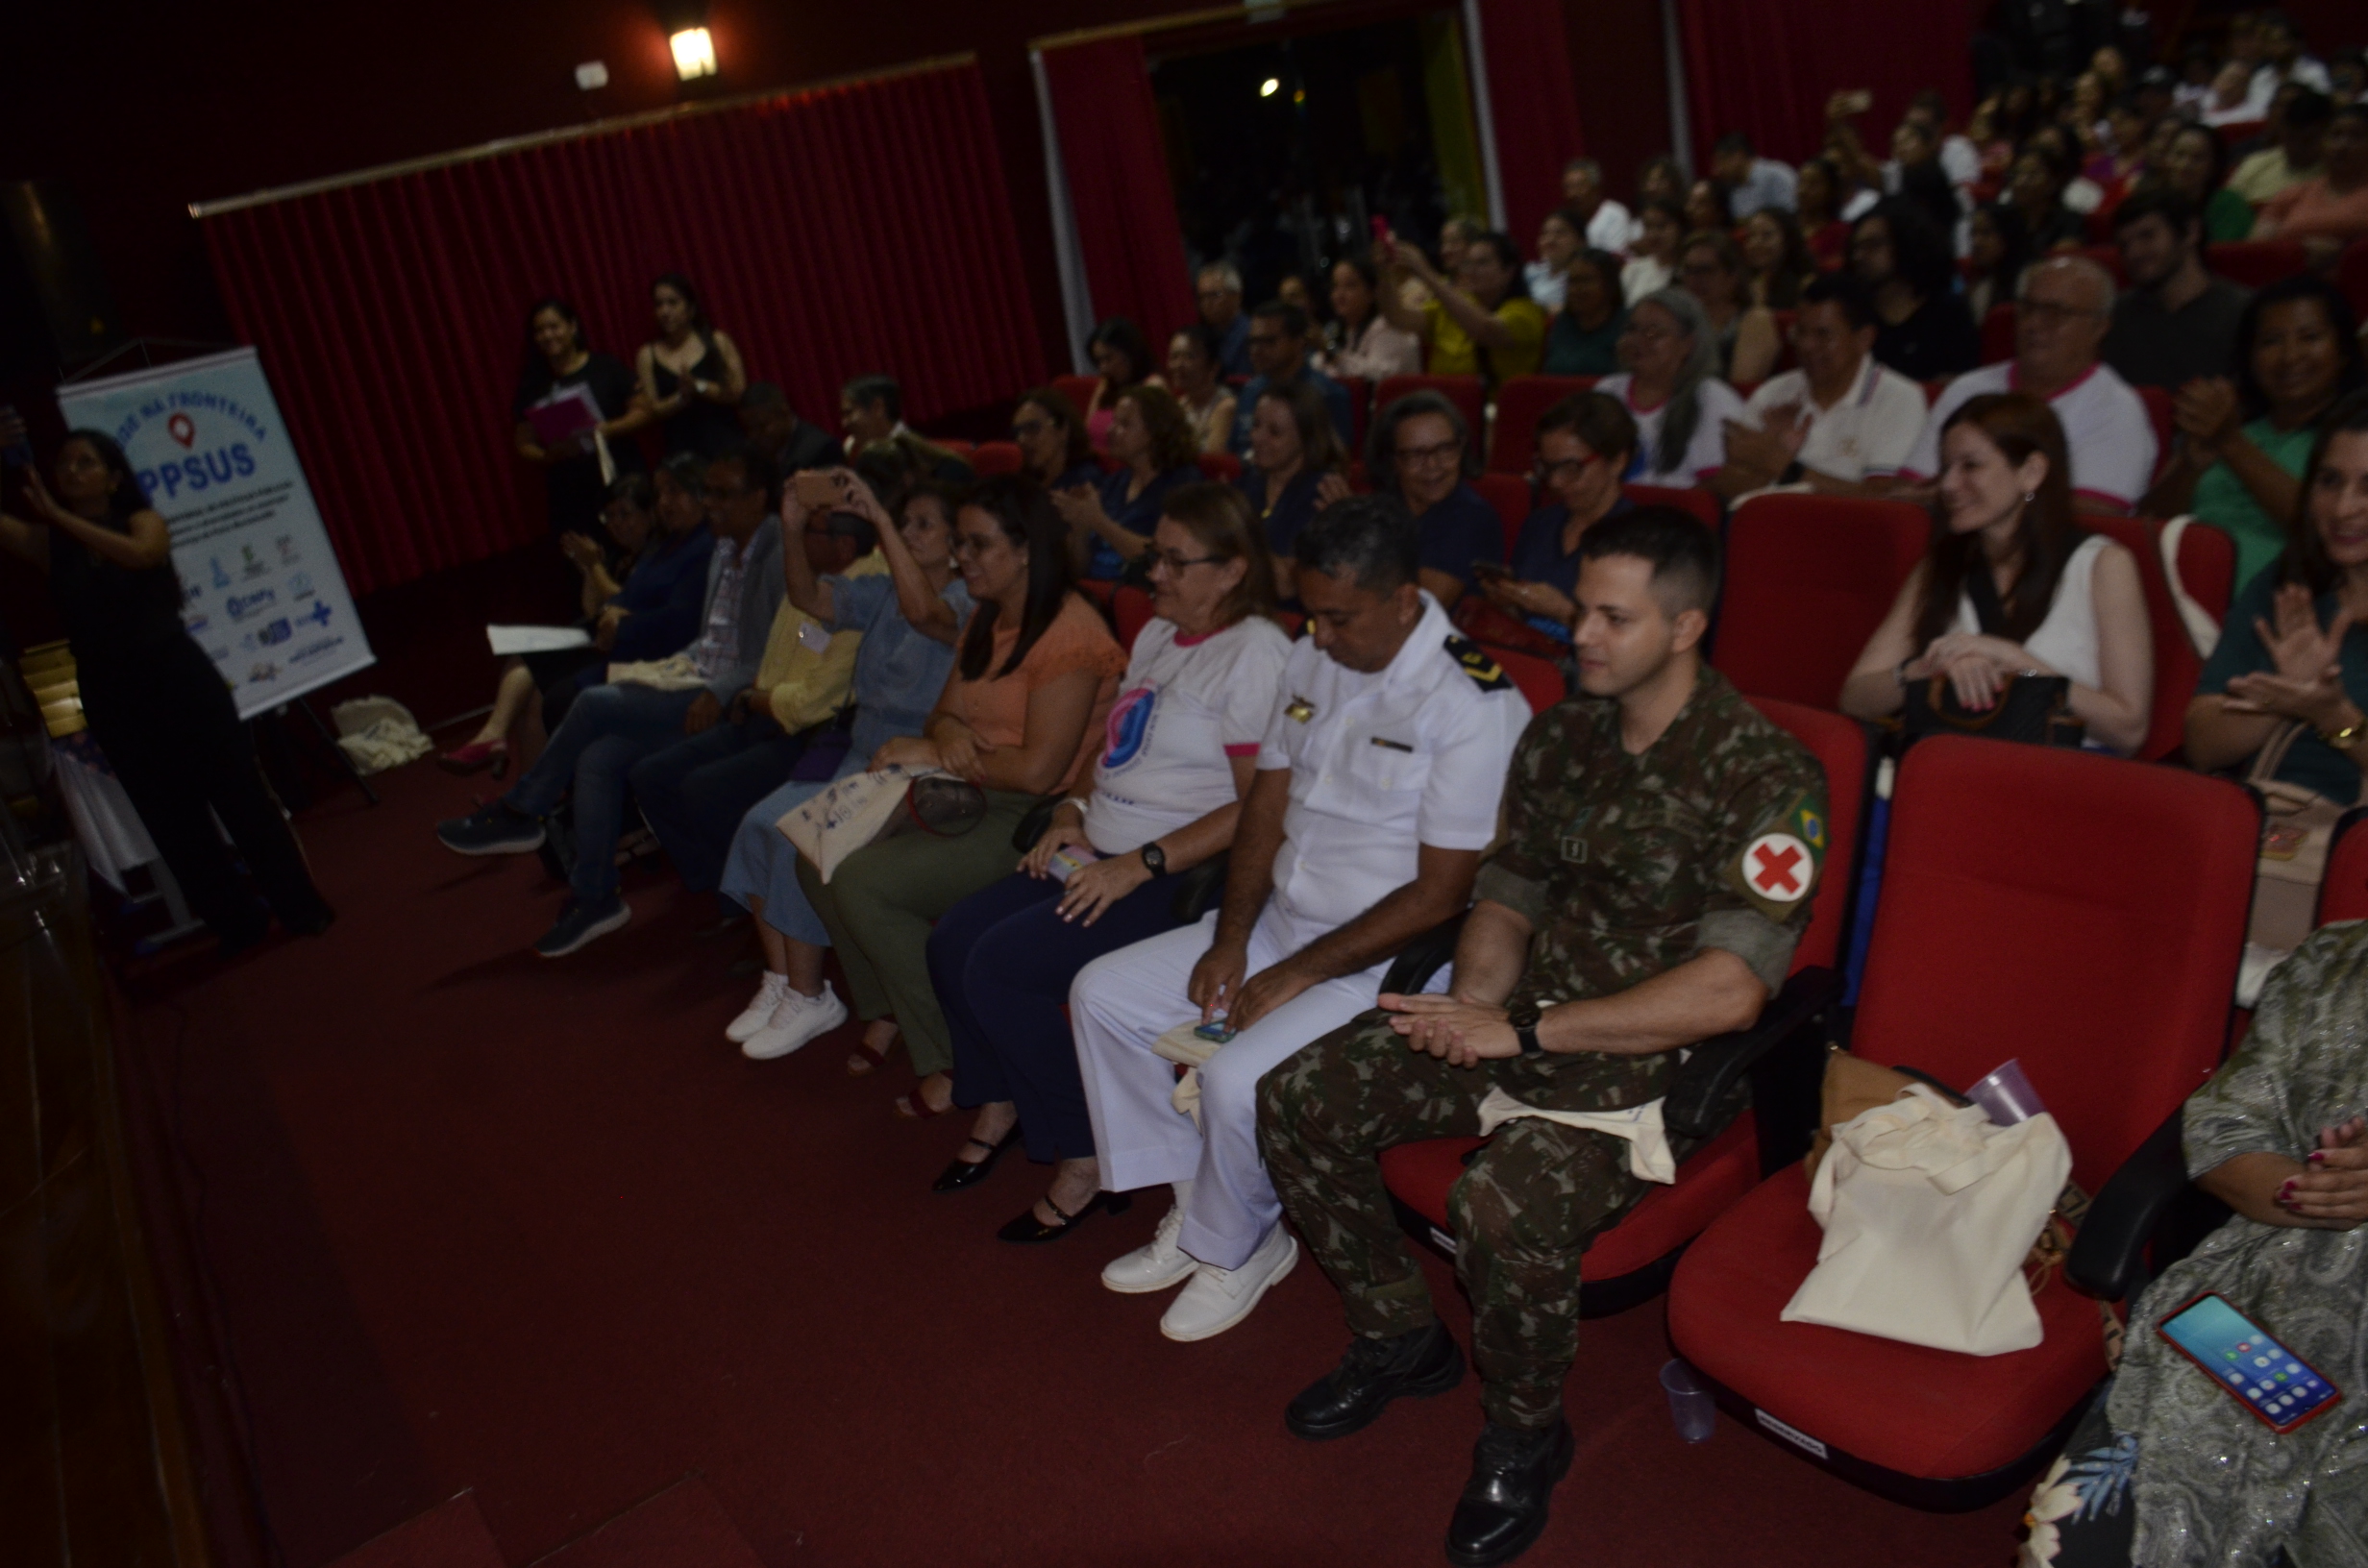 Confira as fotos da abertura do 'Seminário de Intersetorialidade e Saúde na Fronteira’.